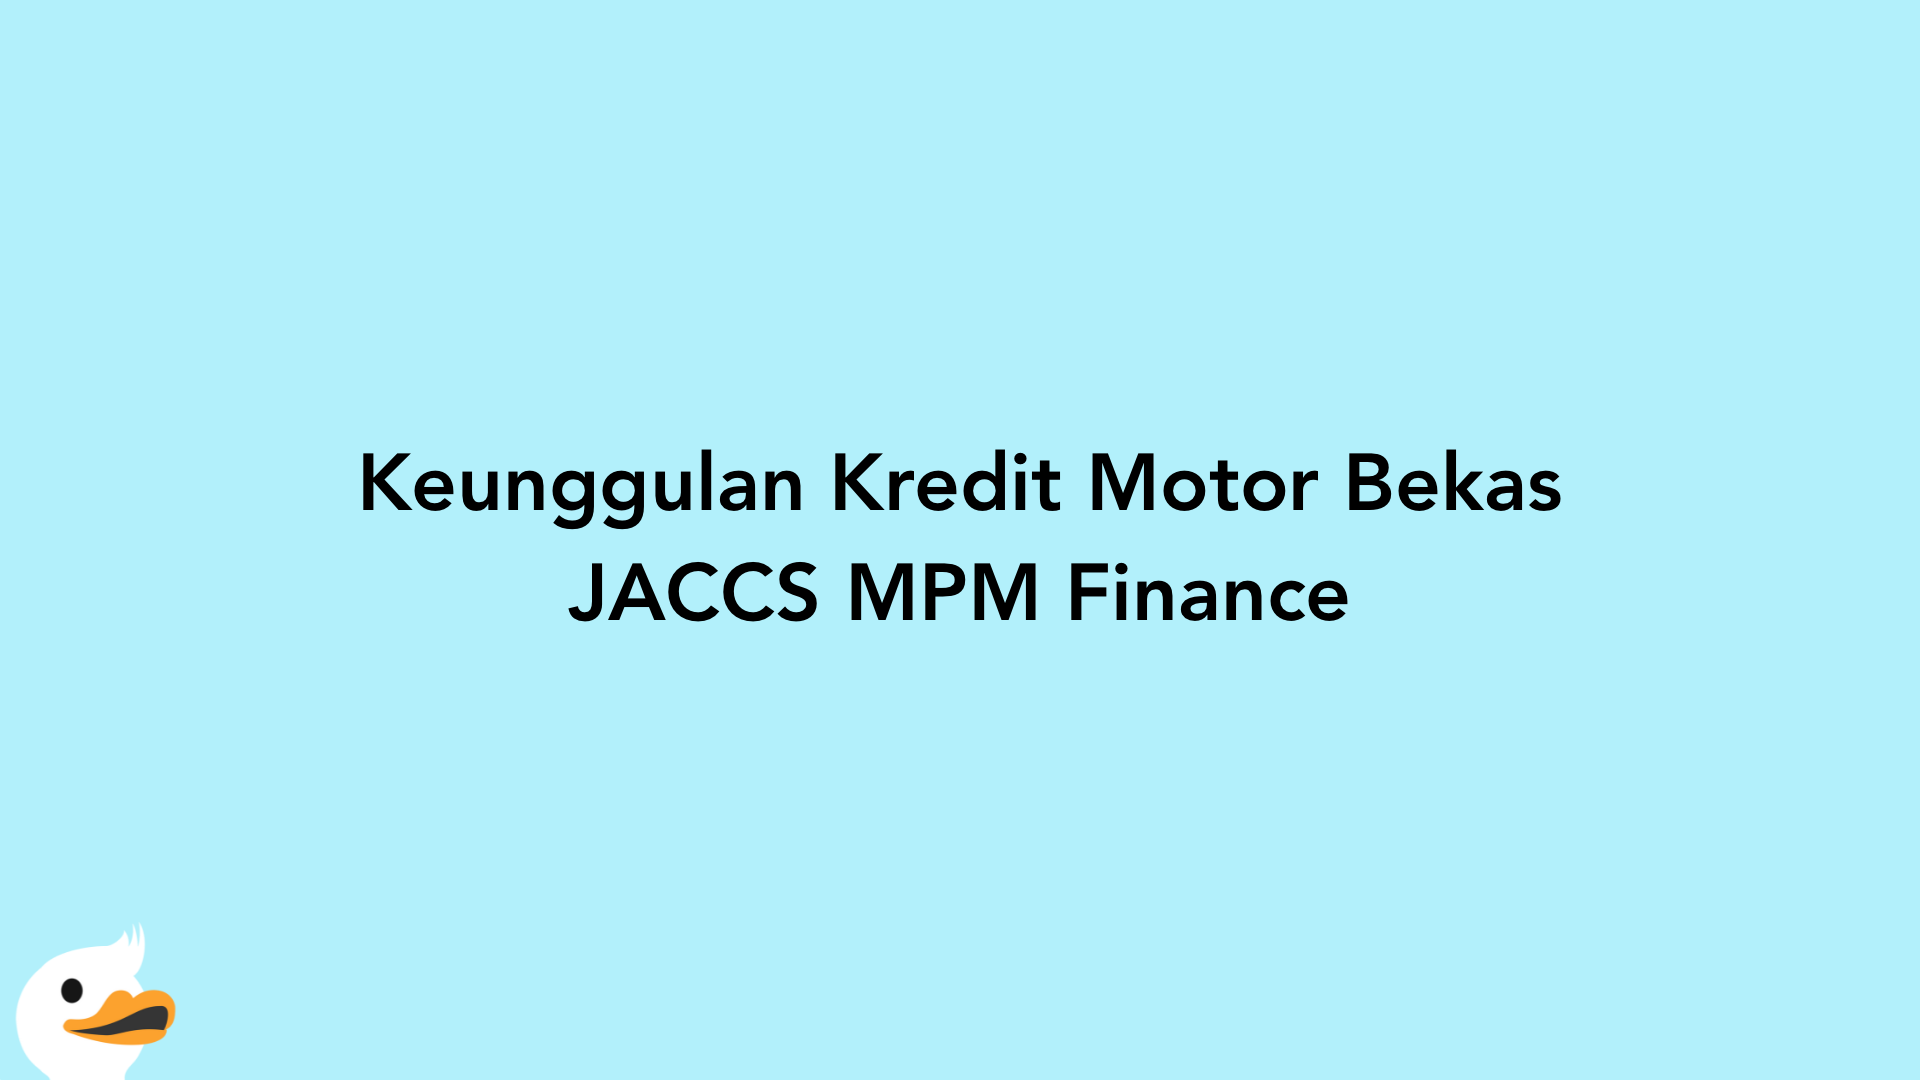 Keunggulan Kredit Motor Bekas JACCS MPM Finance